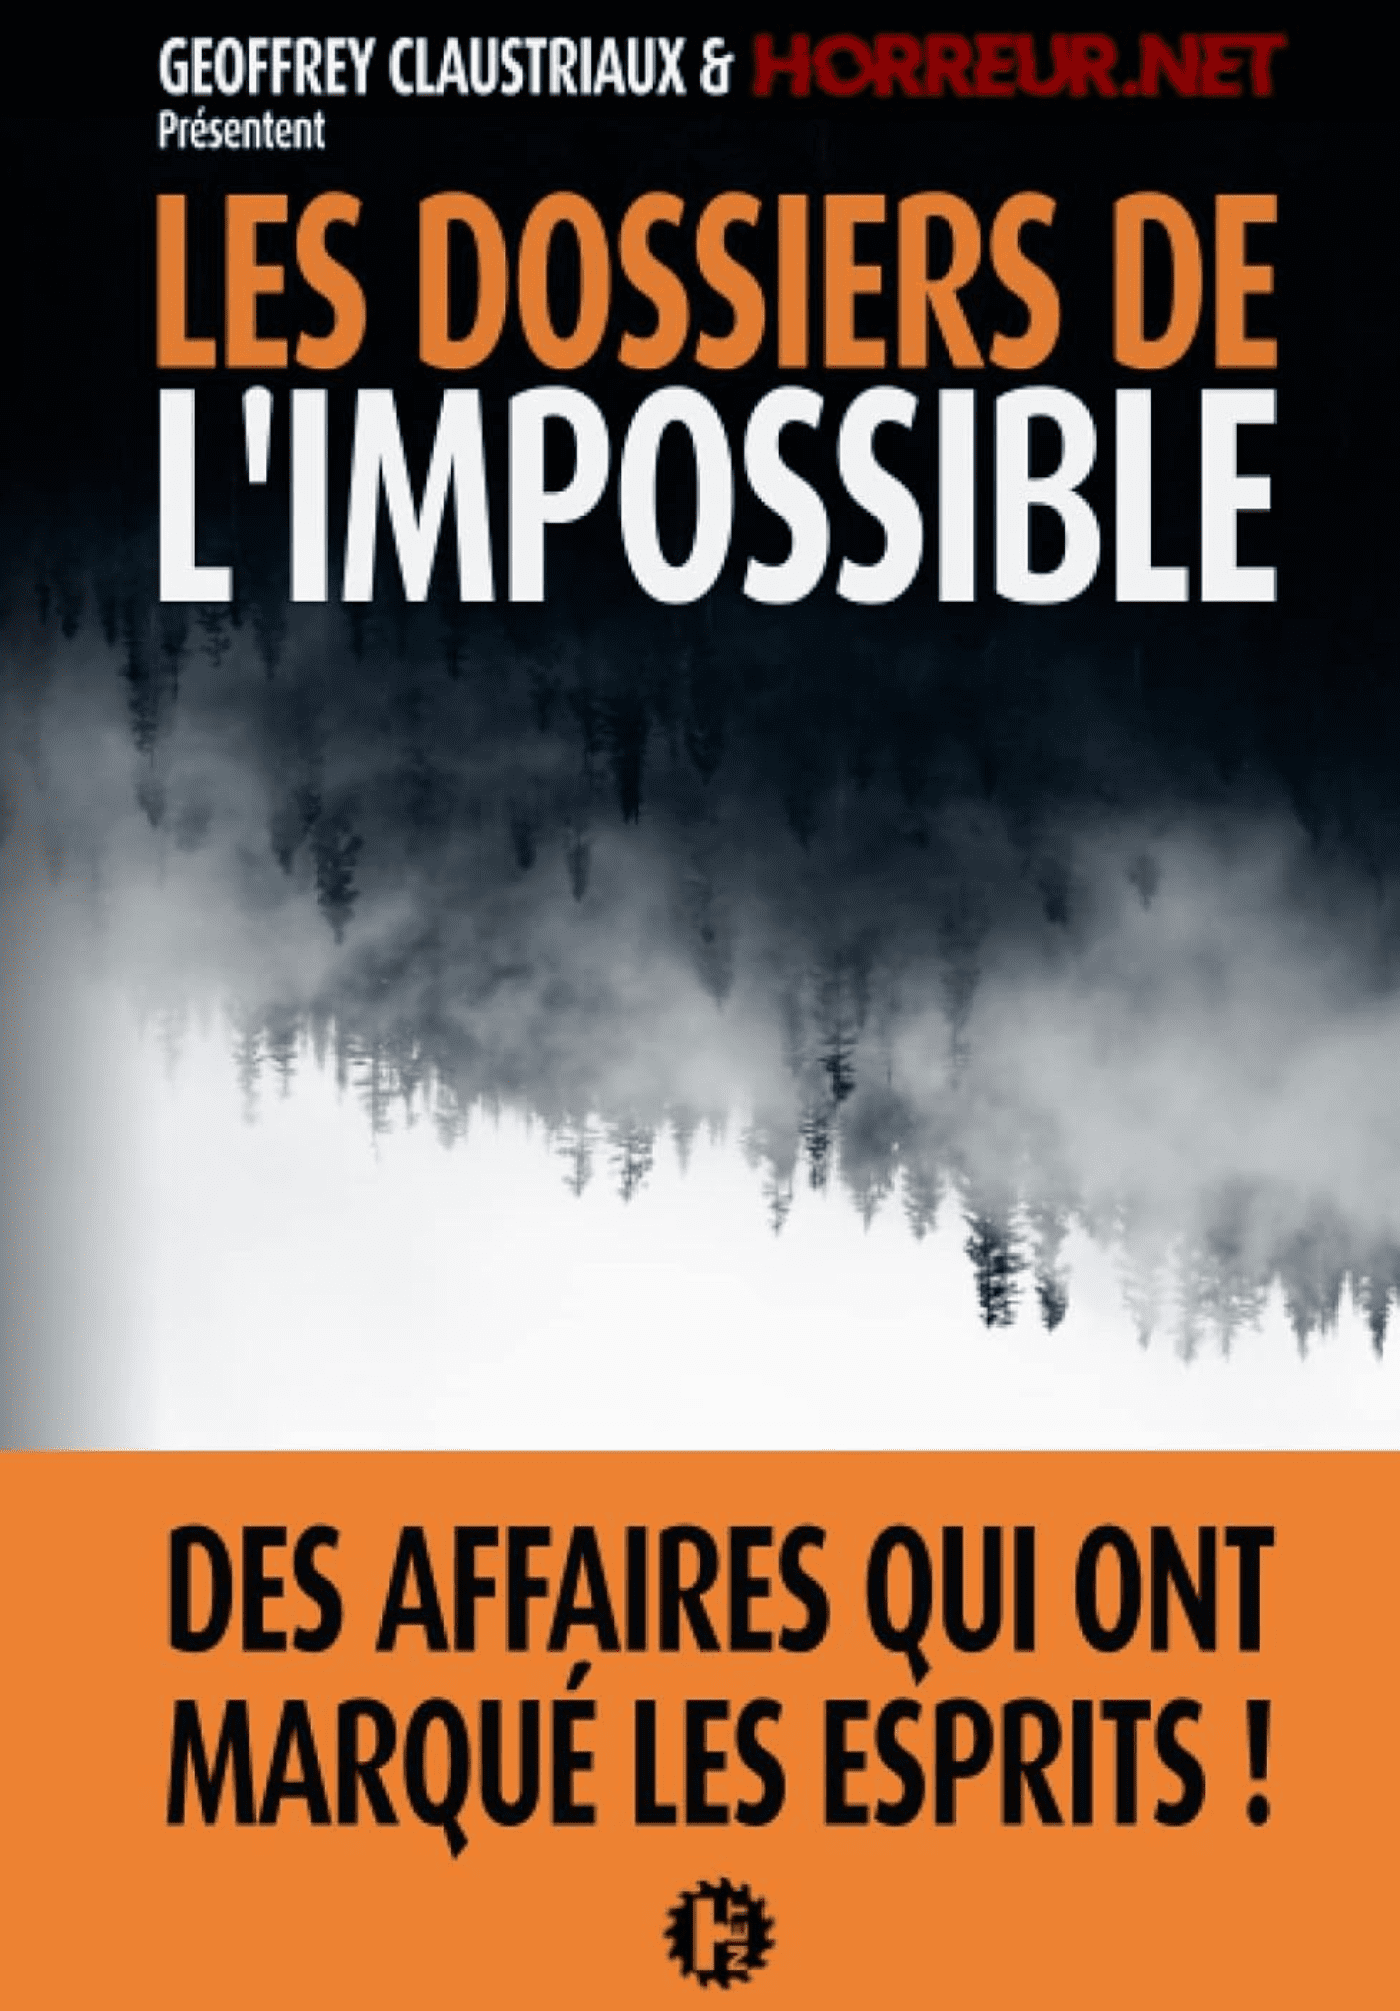 Paranormal, les dossiers de l’impossible 2 avec Geoffrey Claustriaux